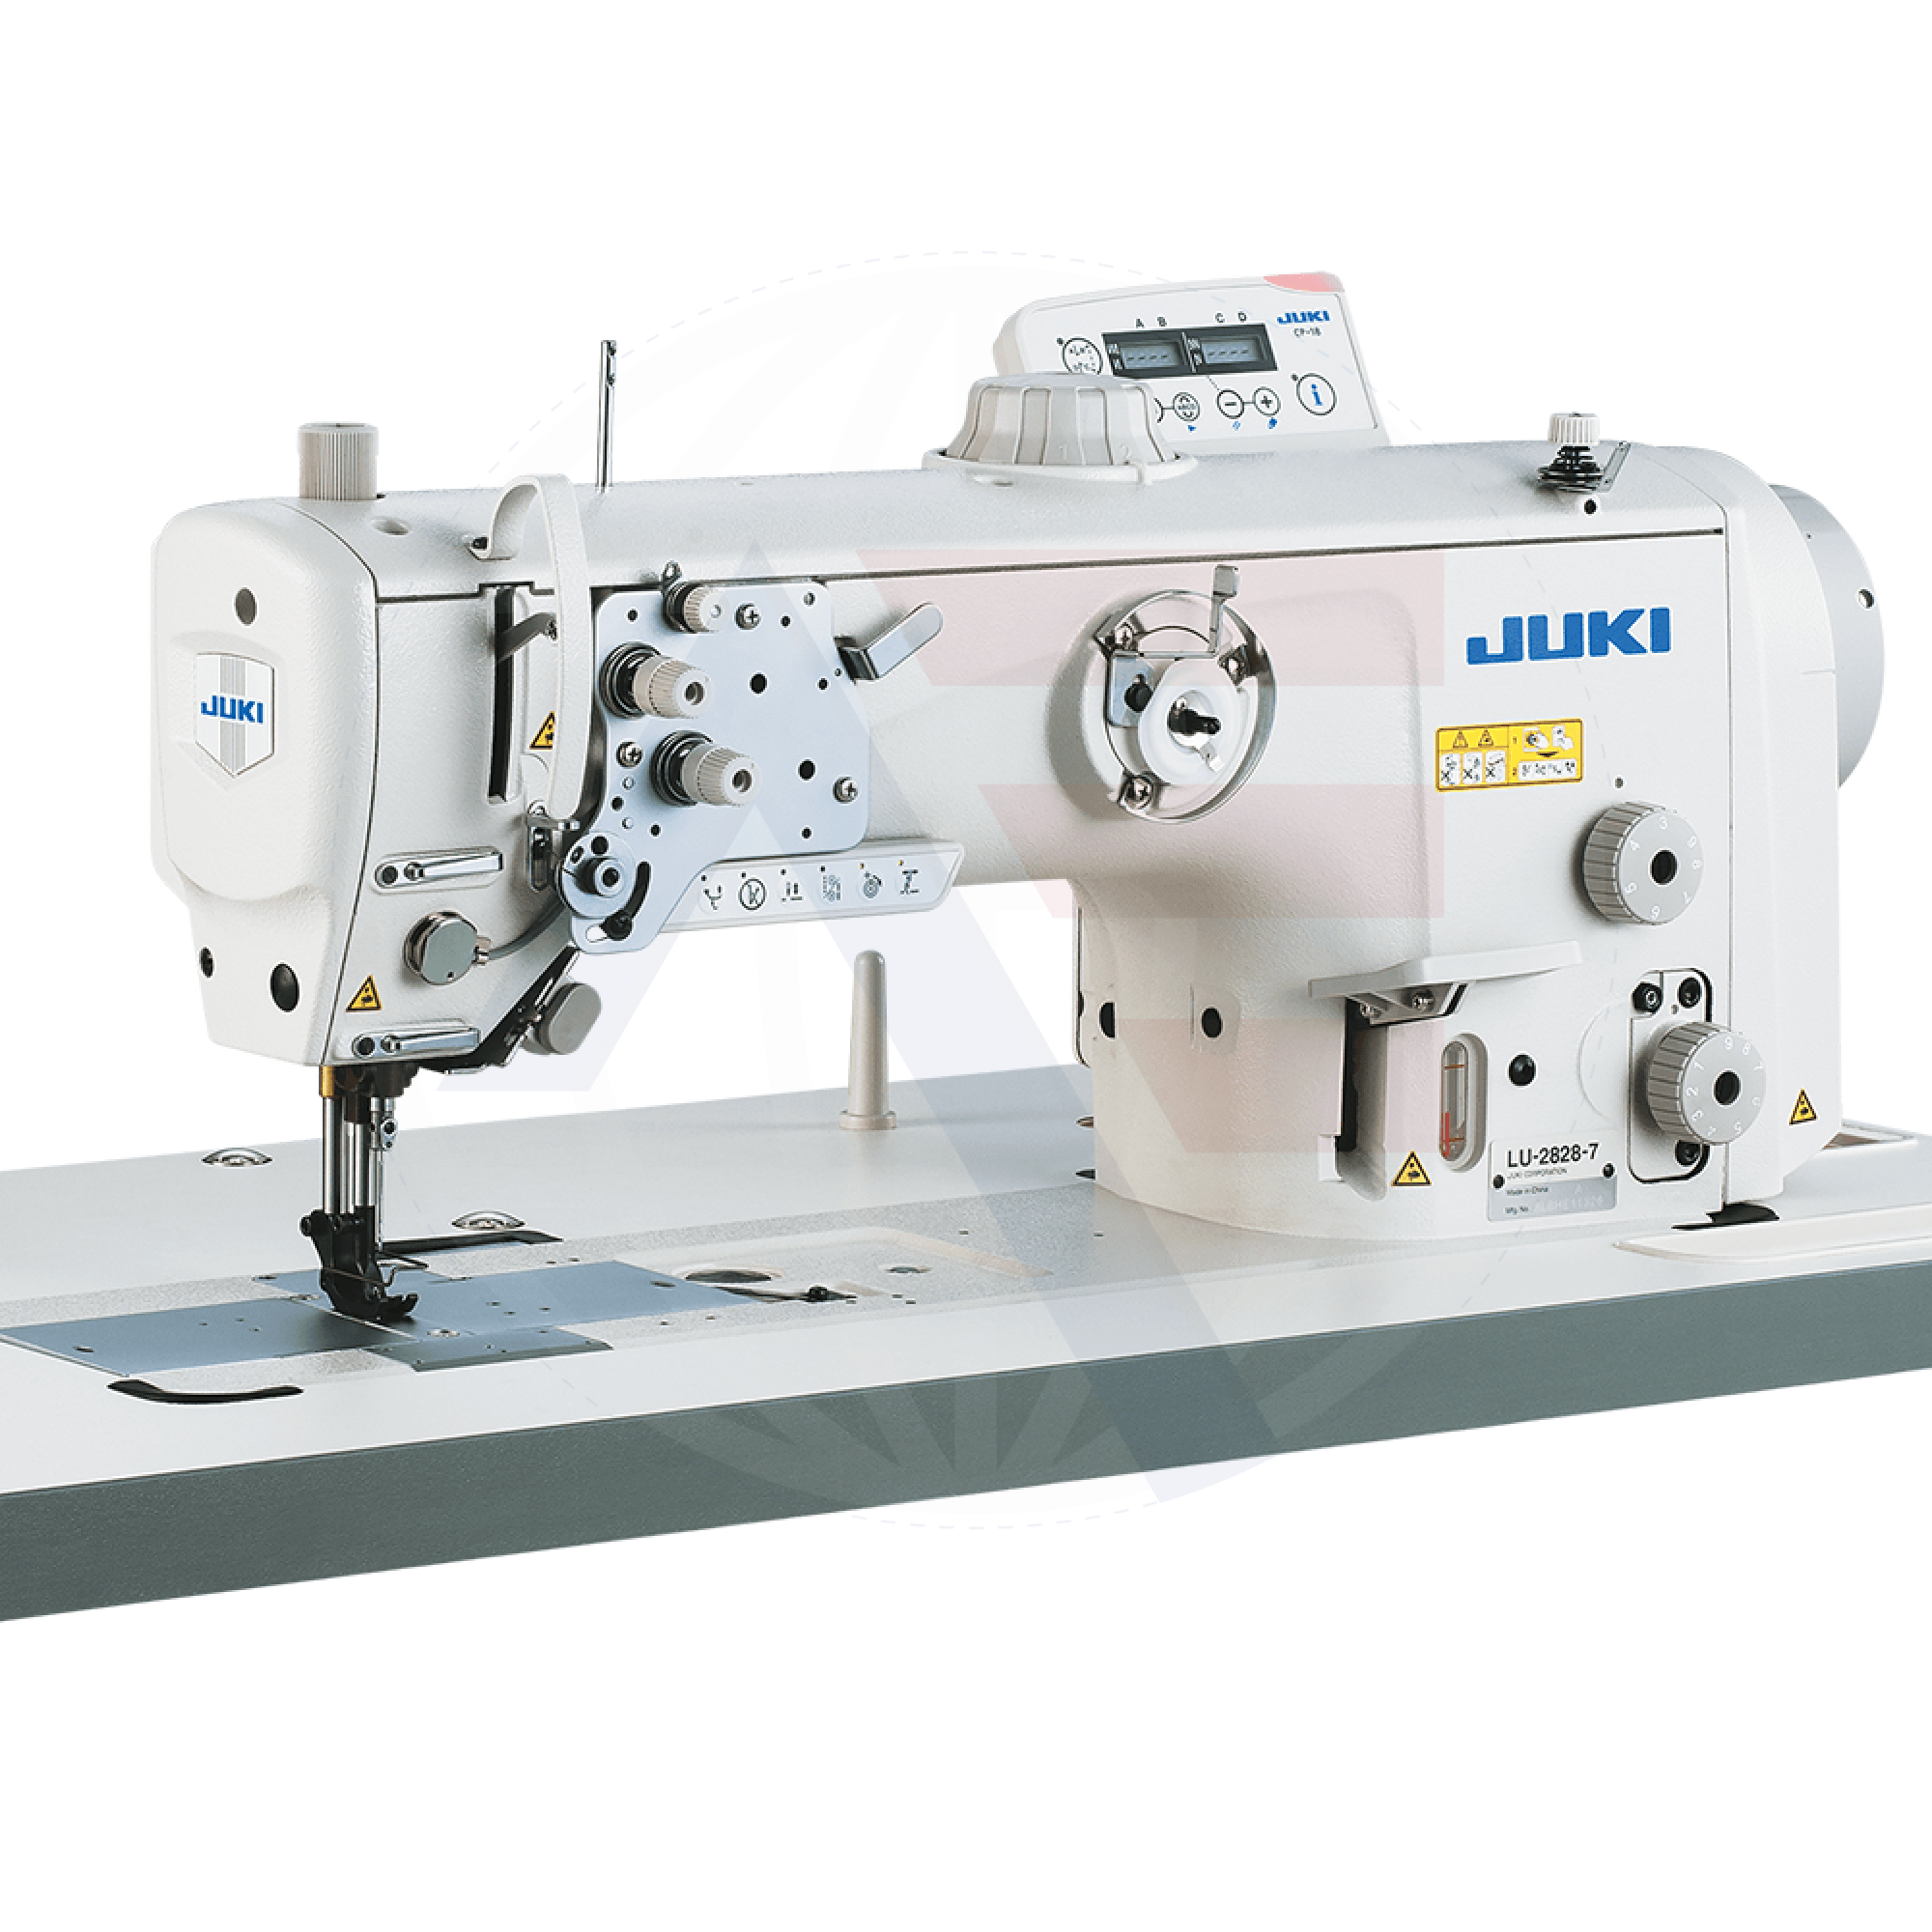 Juki Lu-2828-7 1-Needle Walking-Foot Machine Sewing Machines